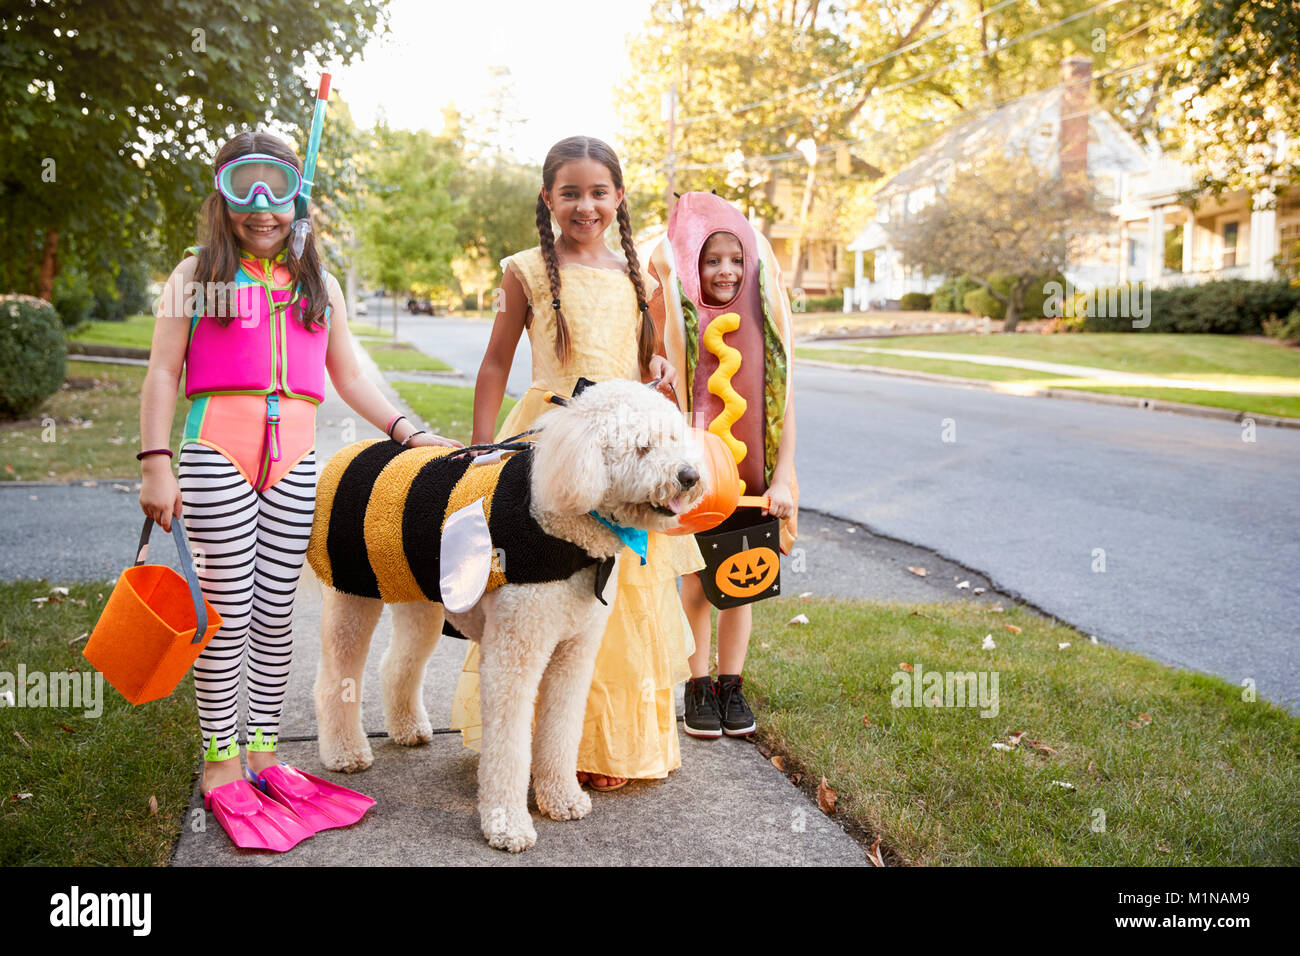 Les enfants et le chien dans des costumes pour Halloween Trick ou traiter Banque D'Images